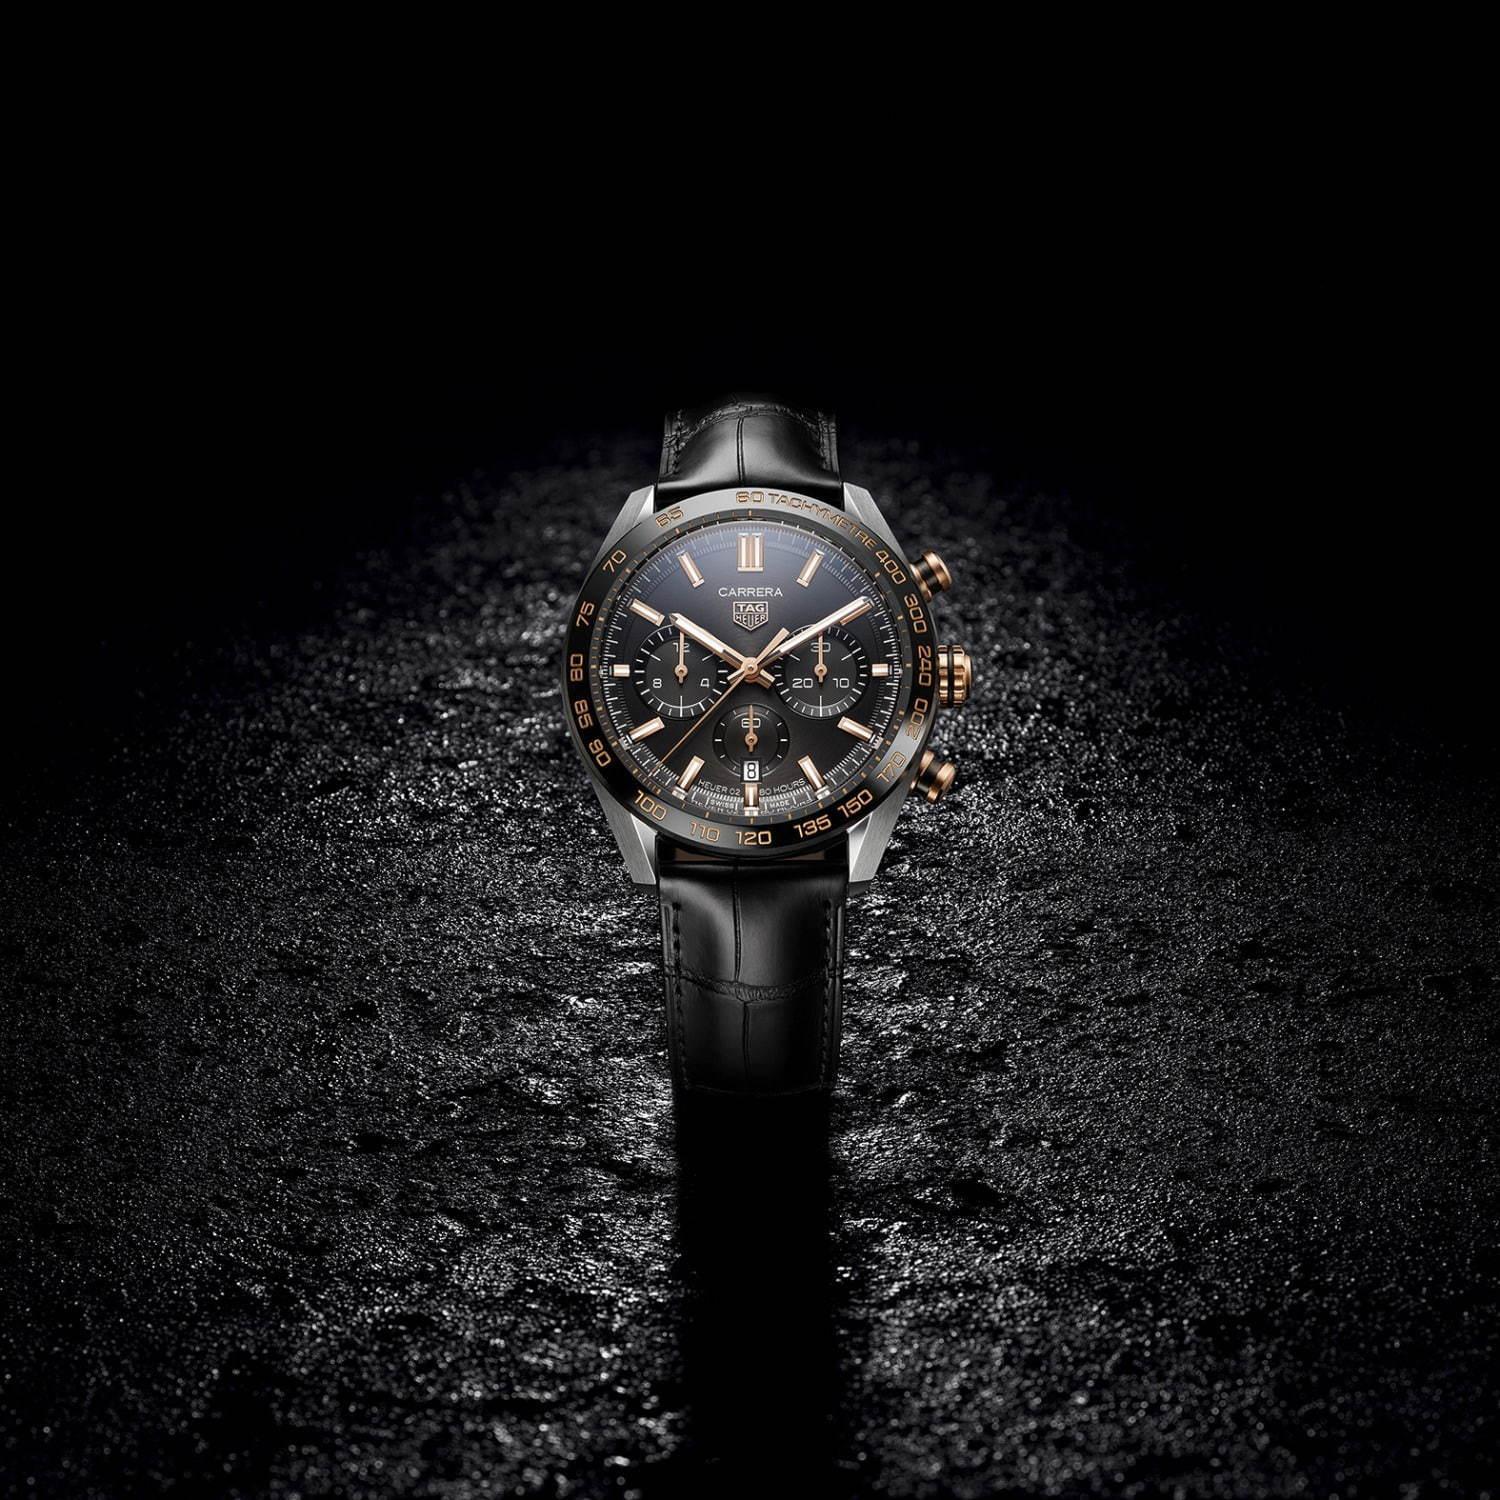 タグ・ホイヤーの腕時計「カレラ クロノグラフ」新作4モデル、“レーシング”から着想したデザイン コピー